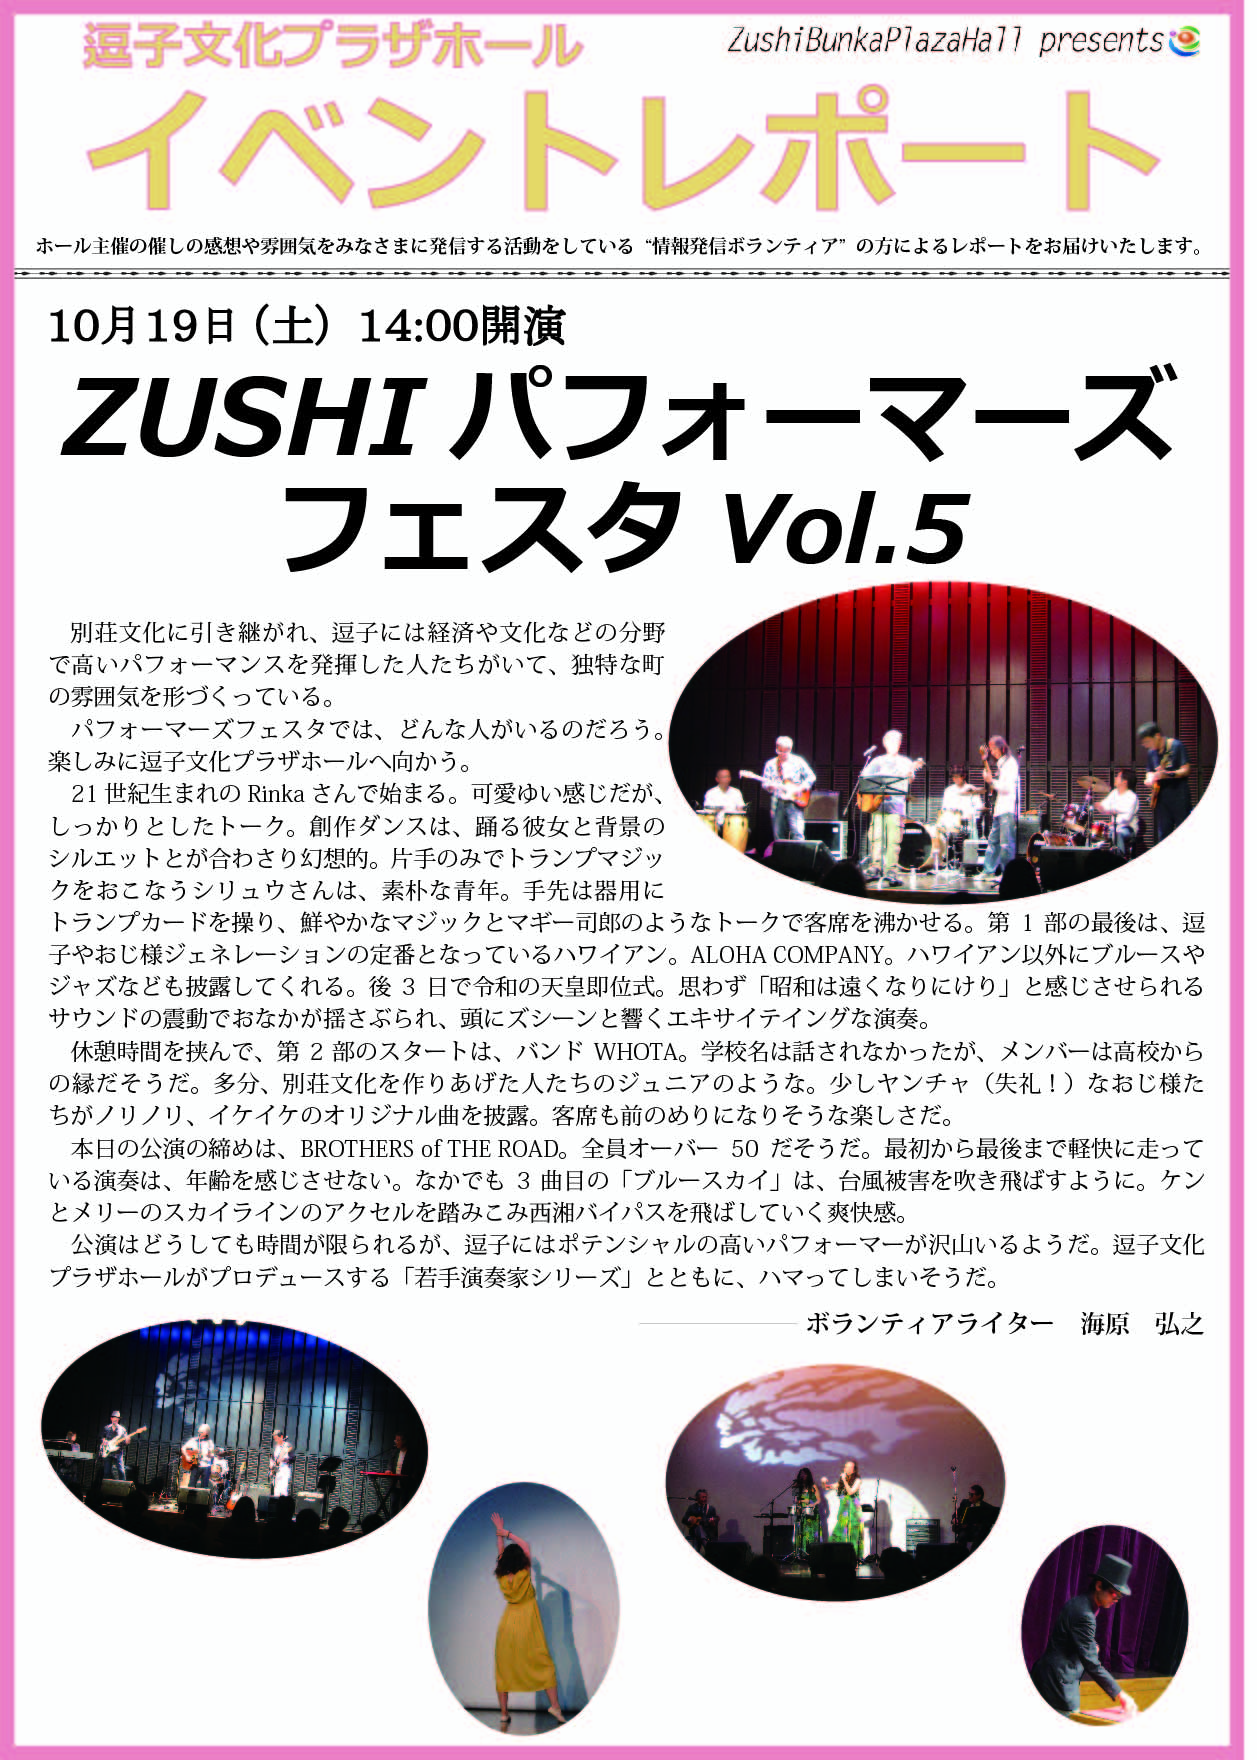 イベントレポート「ZUSHI パフォーマーズフェスタVol.5」2019年10月19日（土）開催